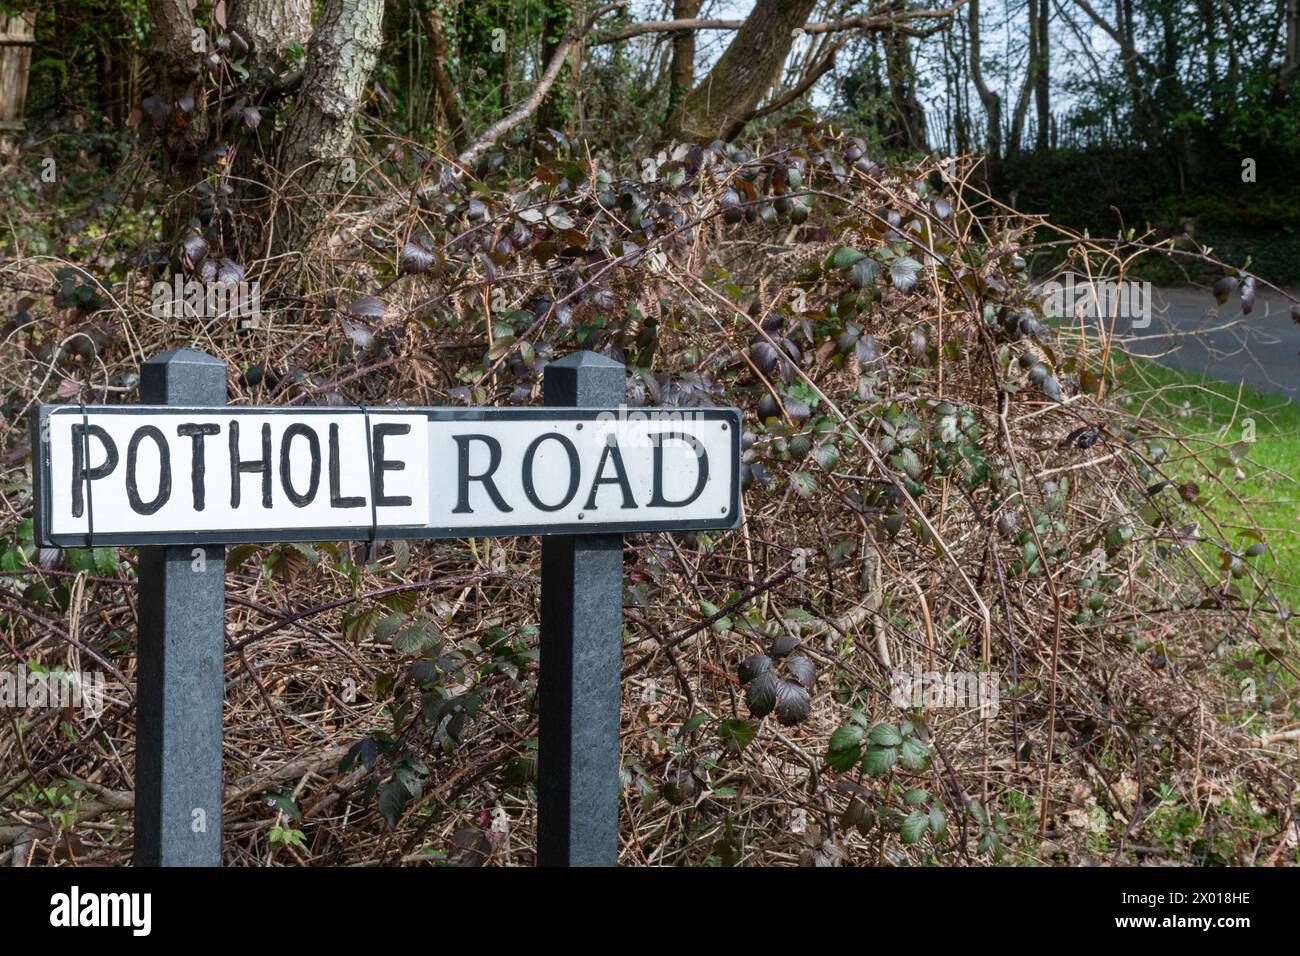 Pothole Road, panneau routier avec le nom réel de la rue remplacé par le mot Pothole probablement par le conducteur local frustré par les nids de poule non réparés, Royaume-Uni Banque D'Images